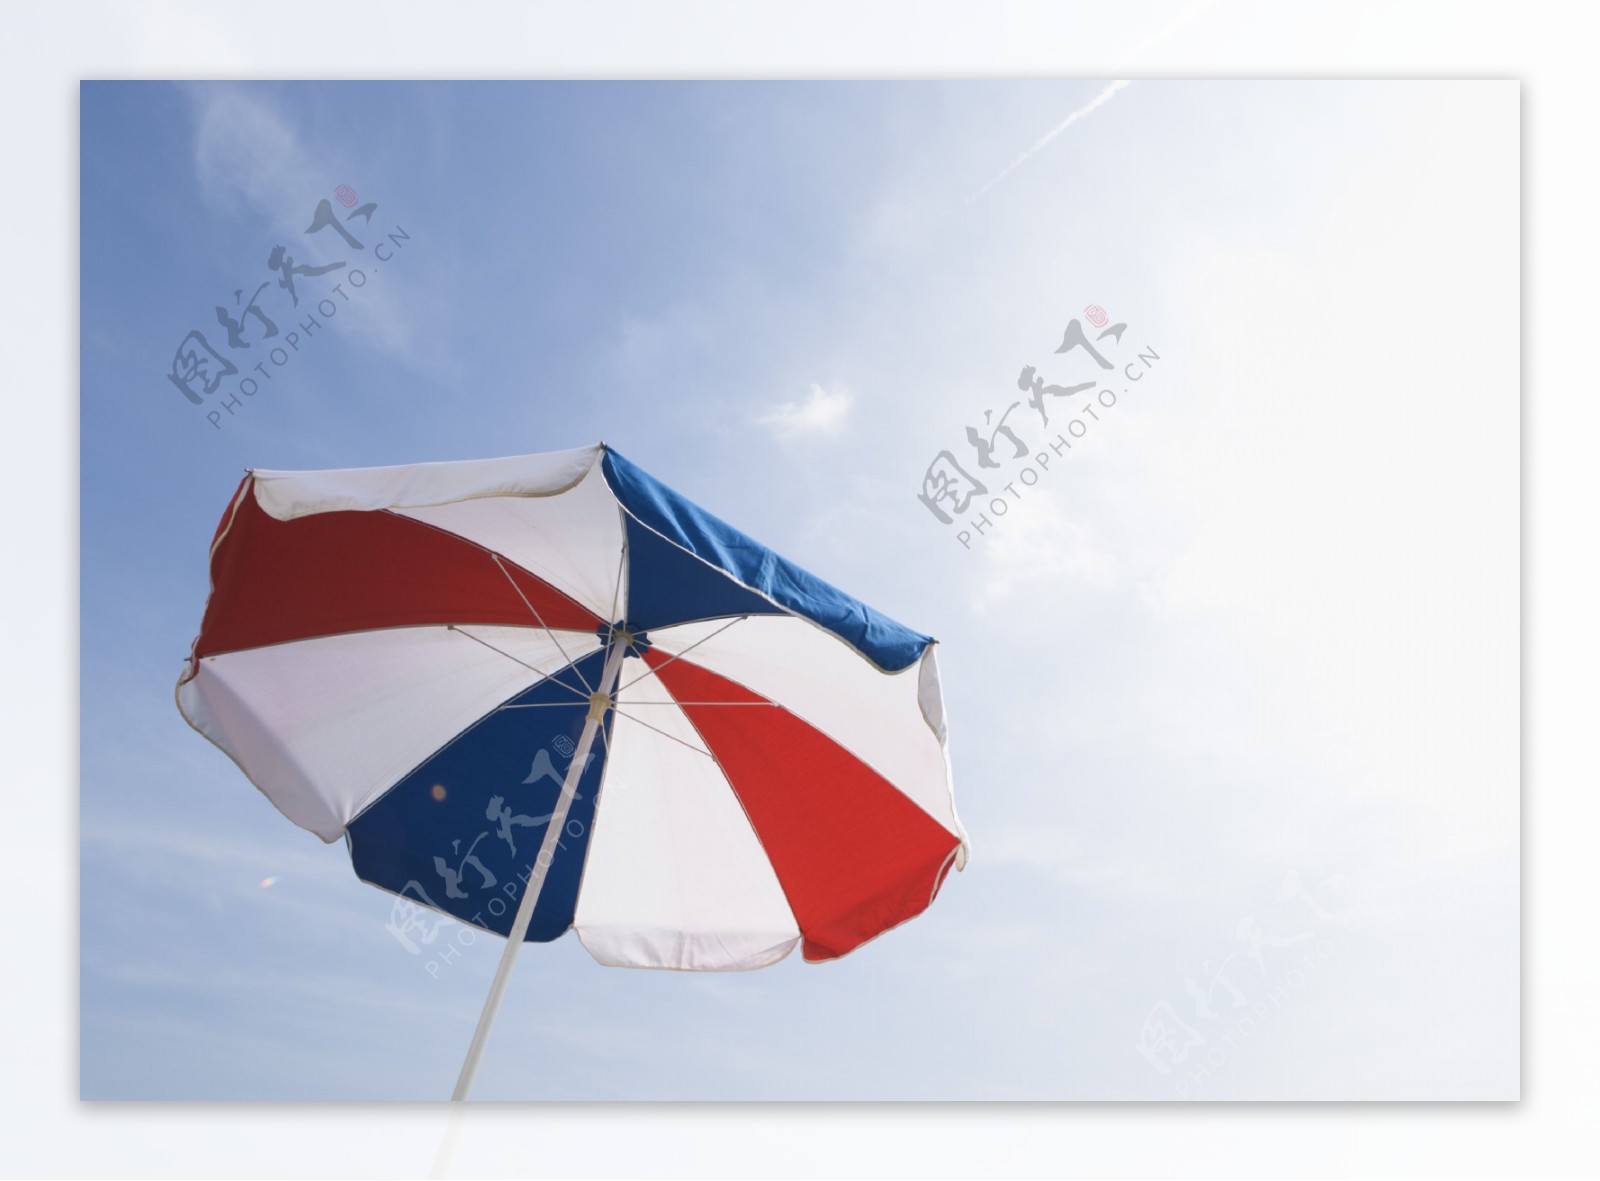 太阳伞摄影图片